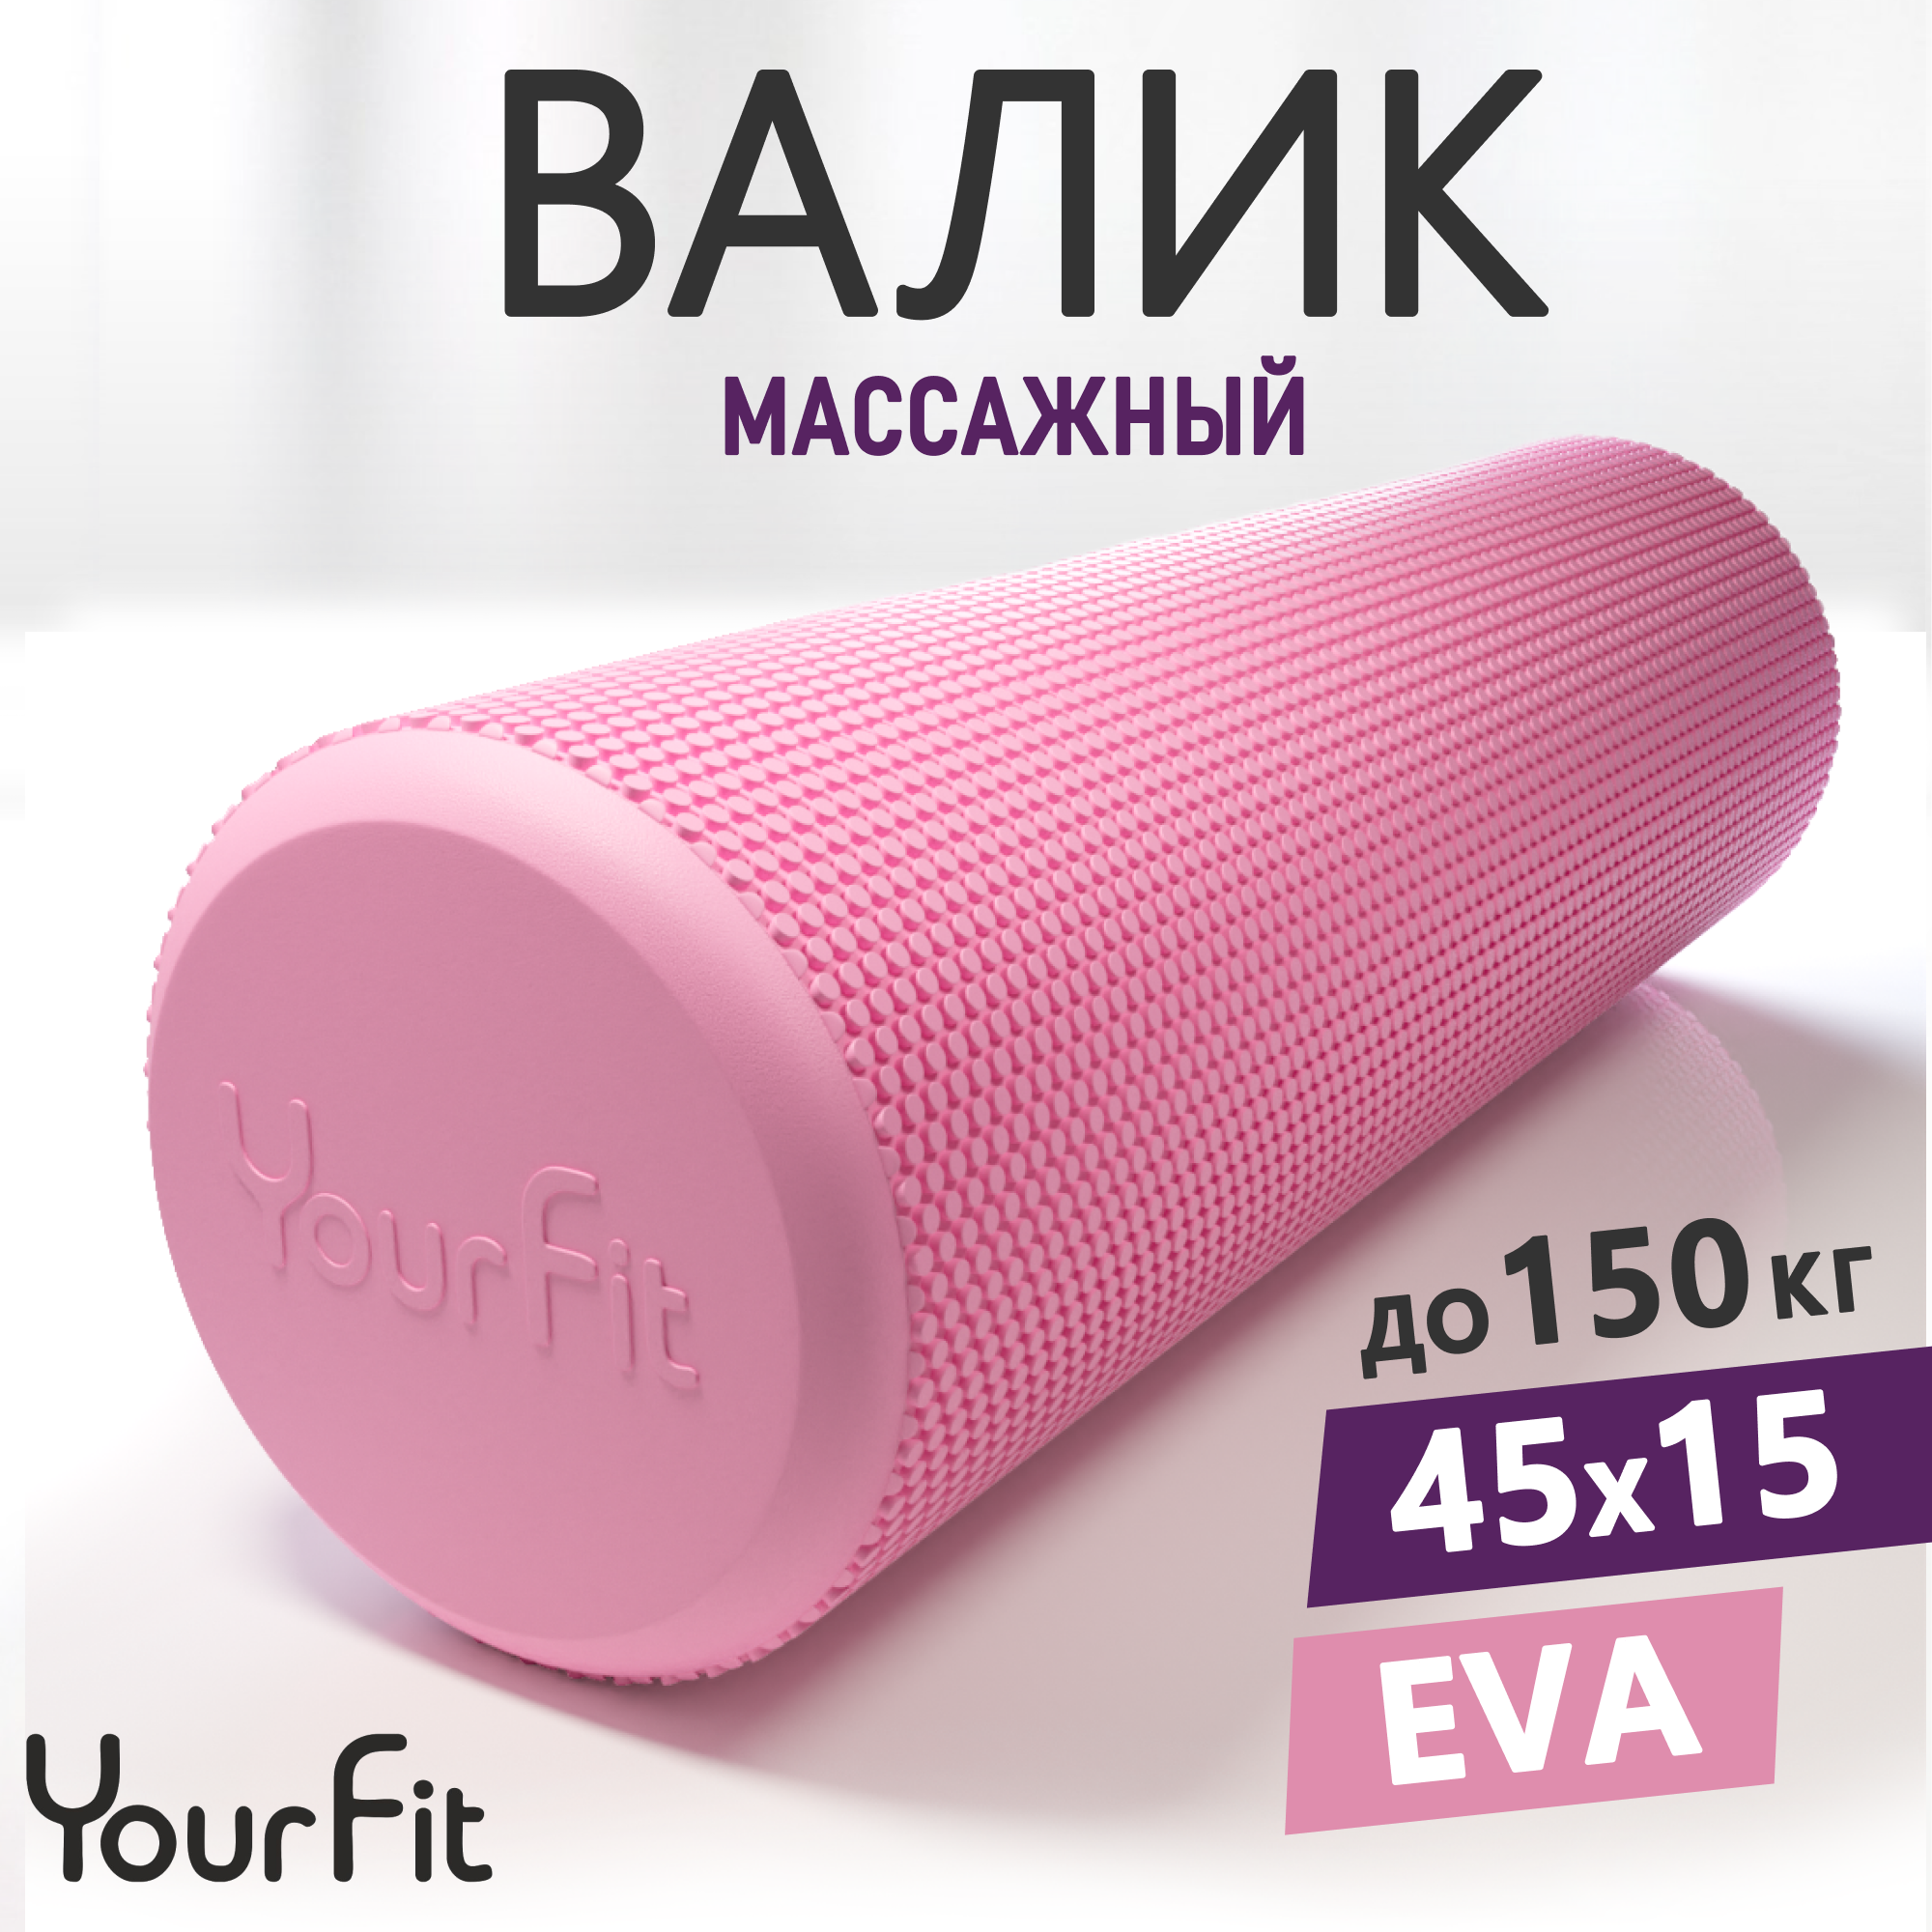 Мфр ролик, Валик для спины массажный, ролл спортивный YourFit, 45 см, розовый